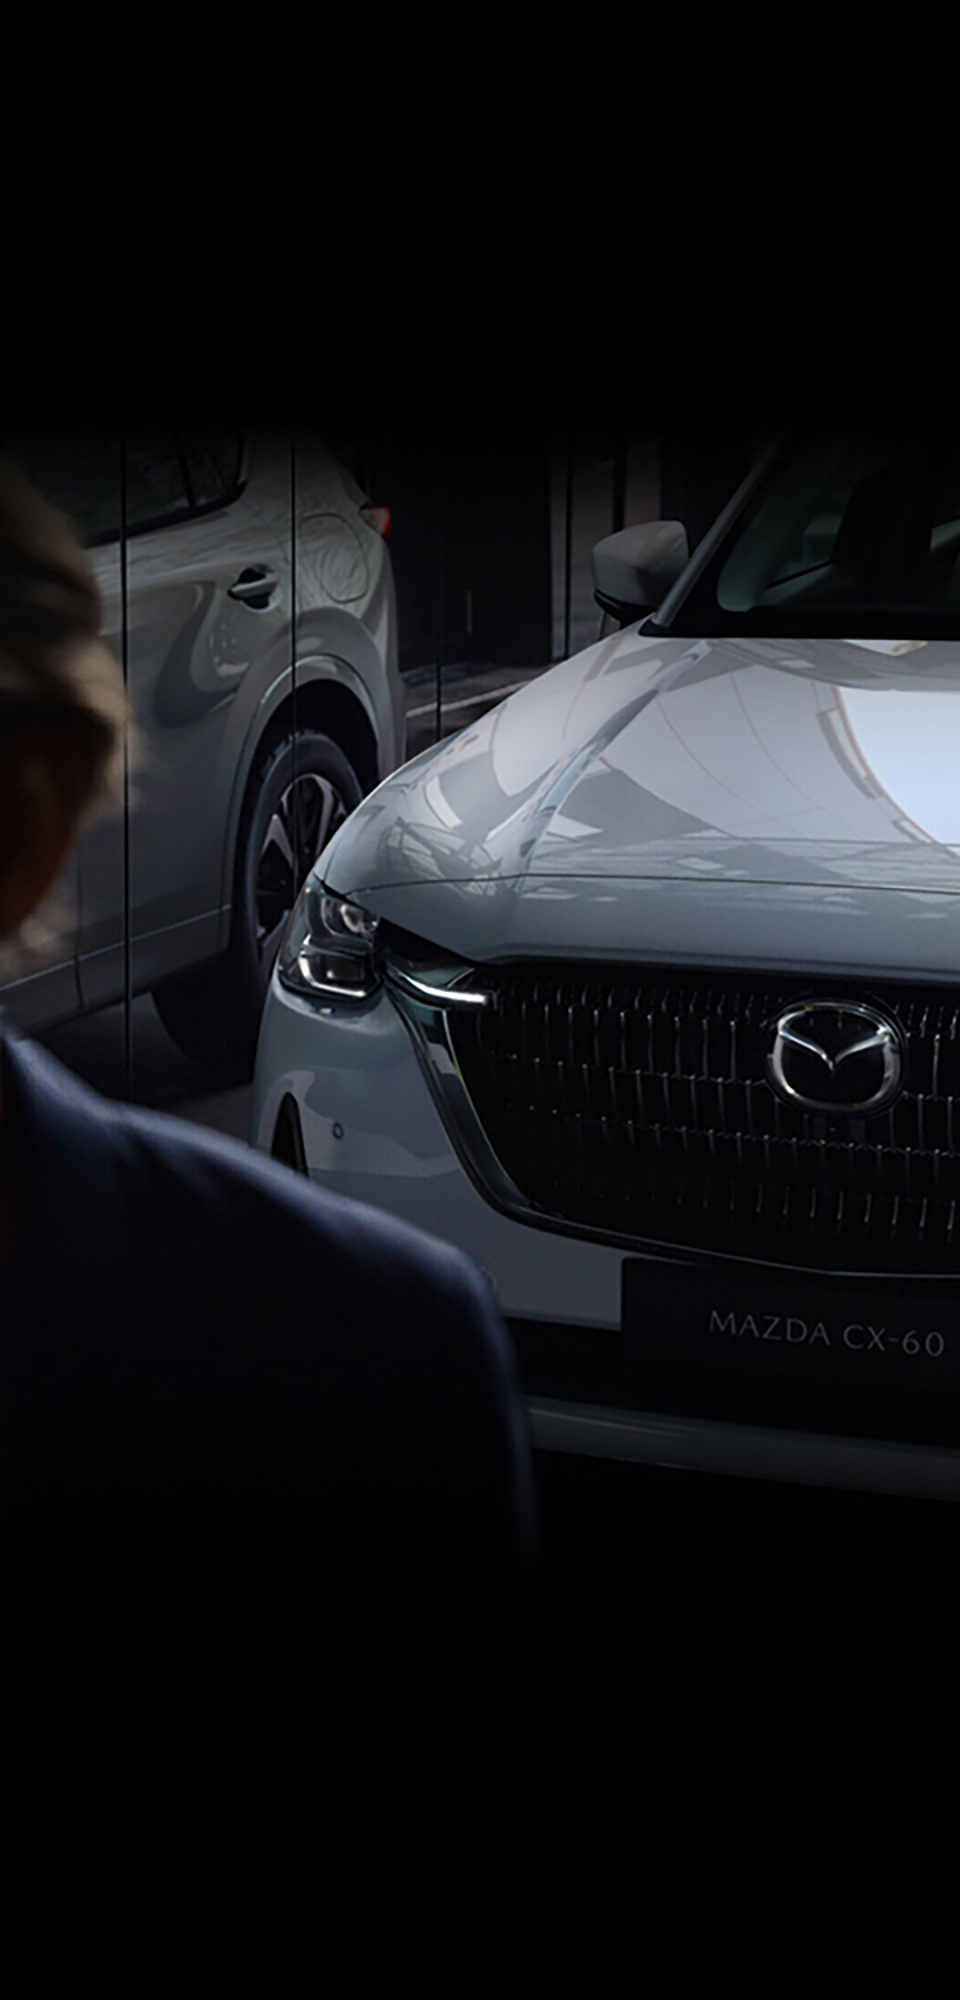 Nowy SUV, Mazda CX-60 Plug-In Hybrid odbija się w szklanym oknie, widok z przodu.